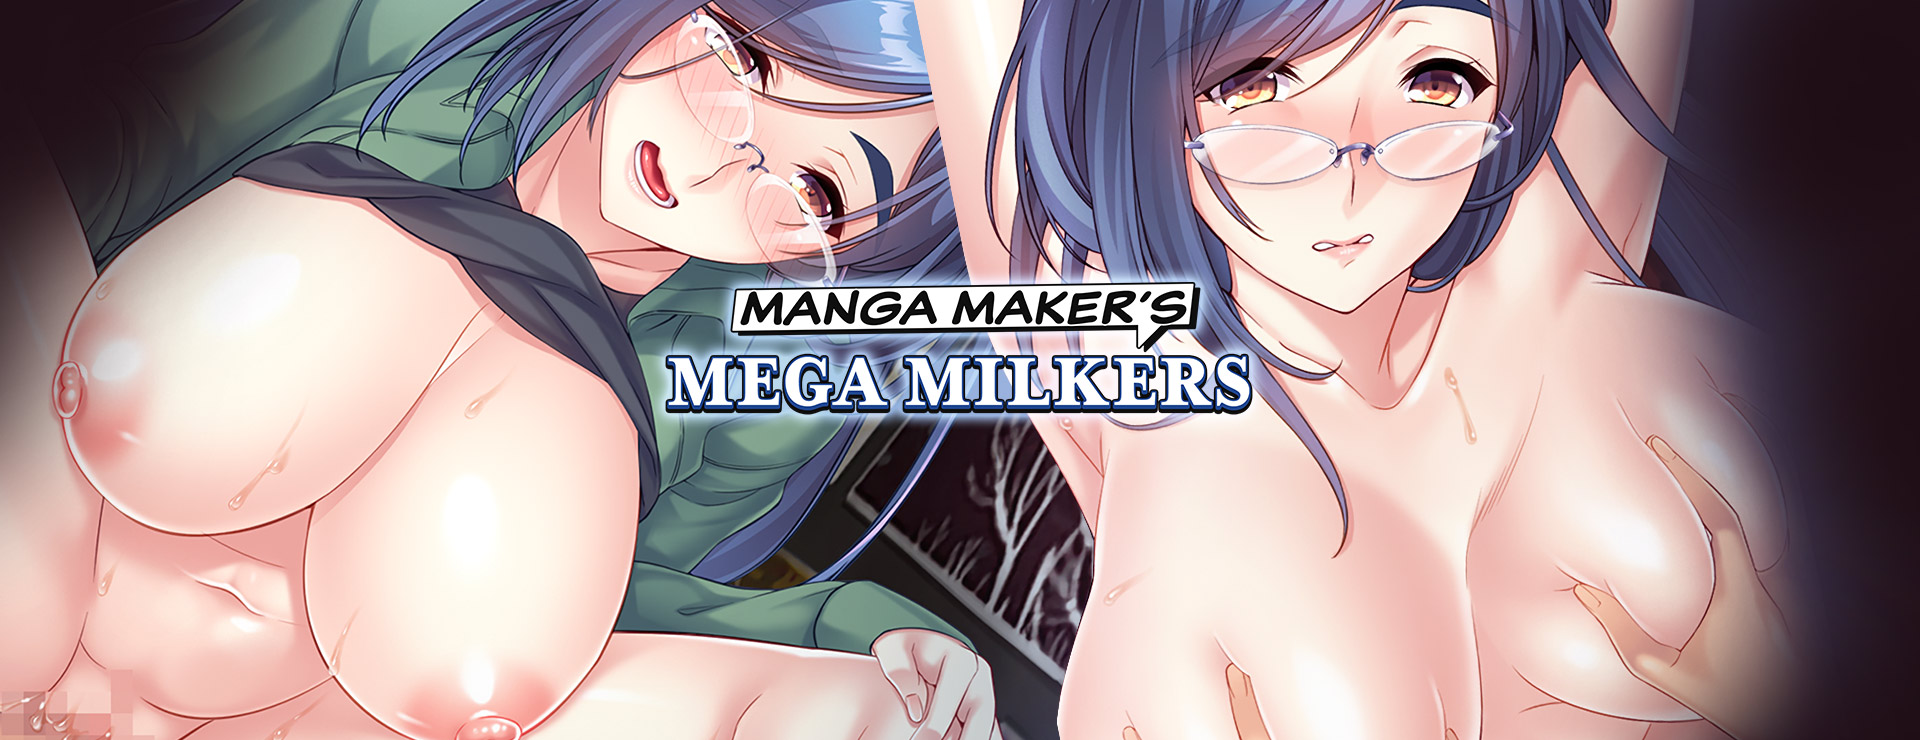 Manga Maker's Mega Milkers - Novela Visual Juego